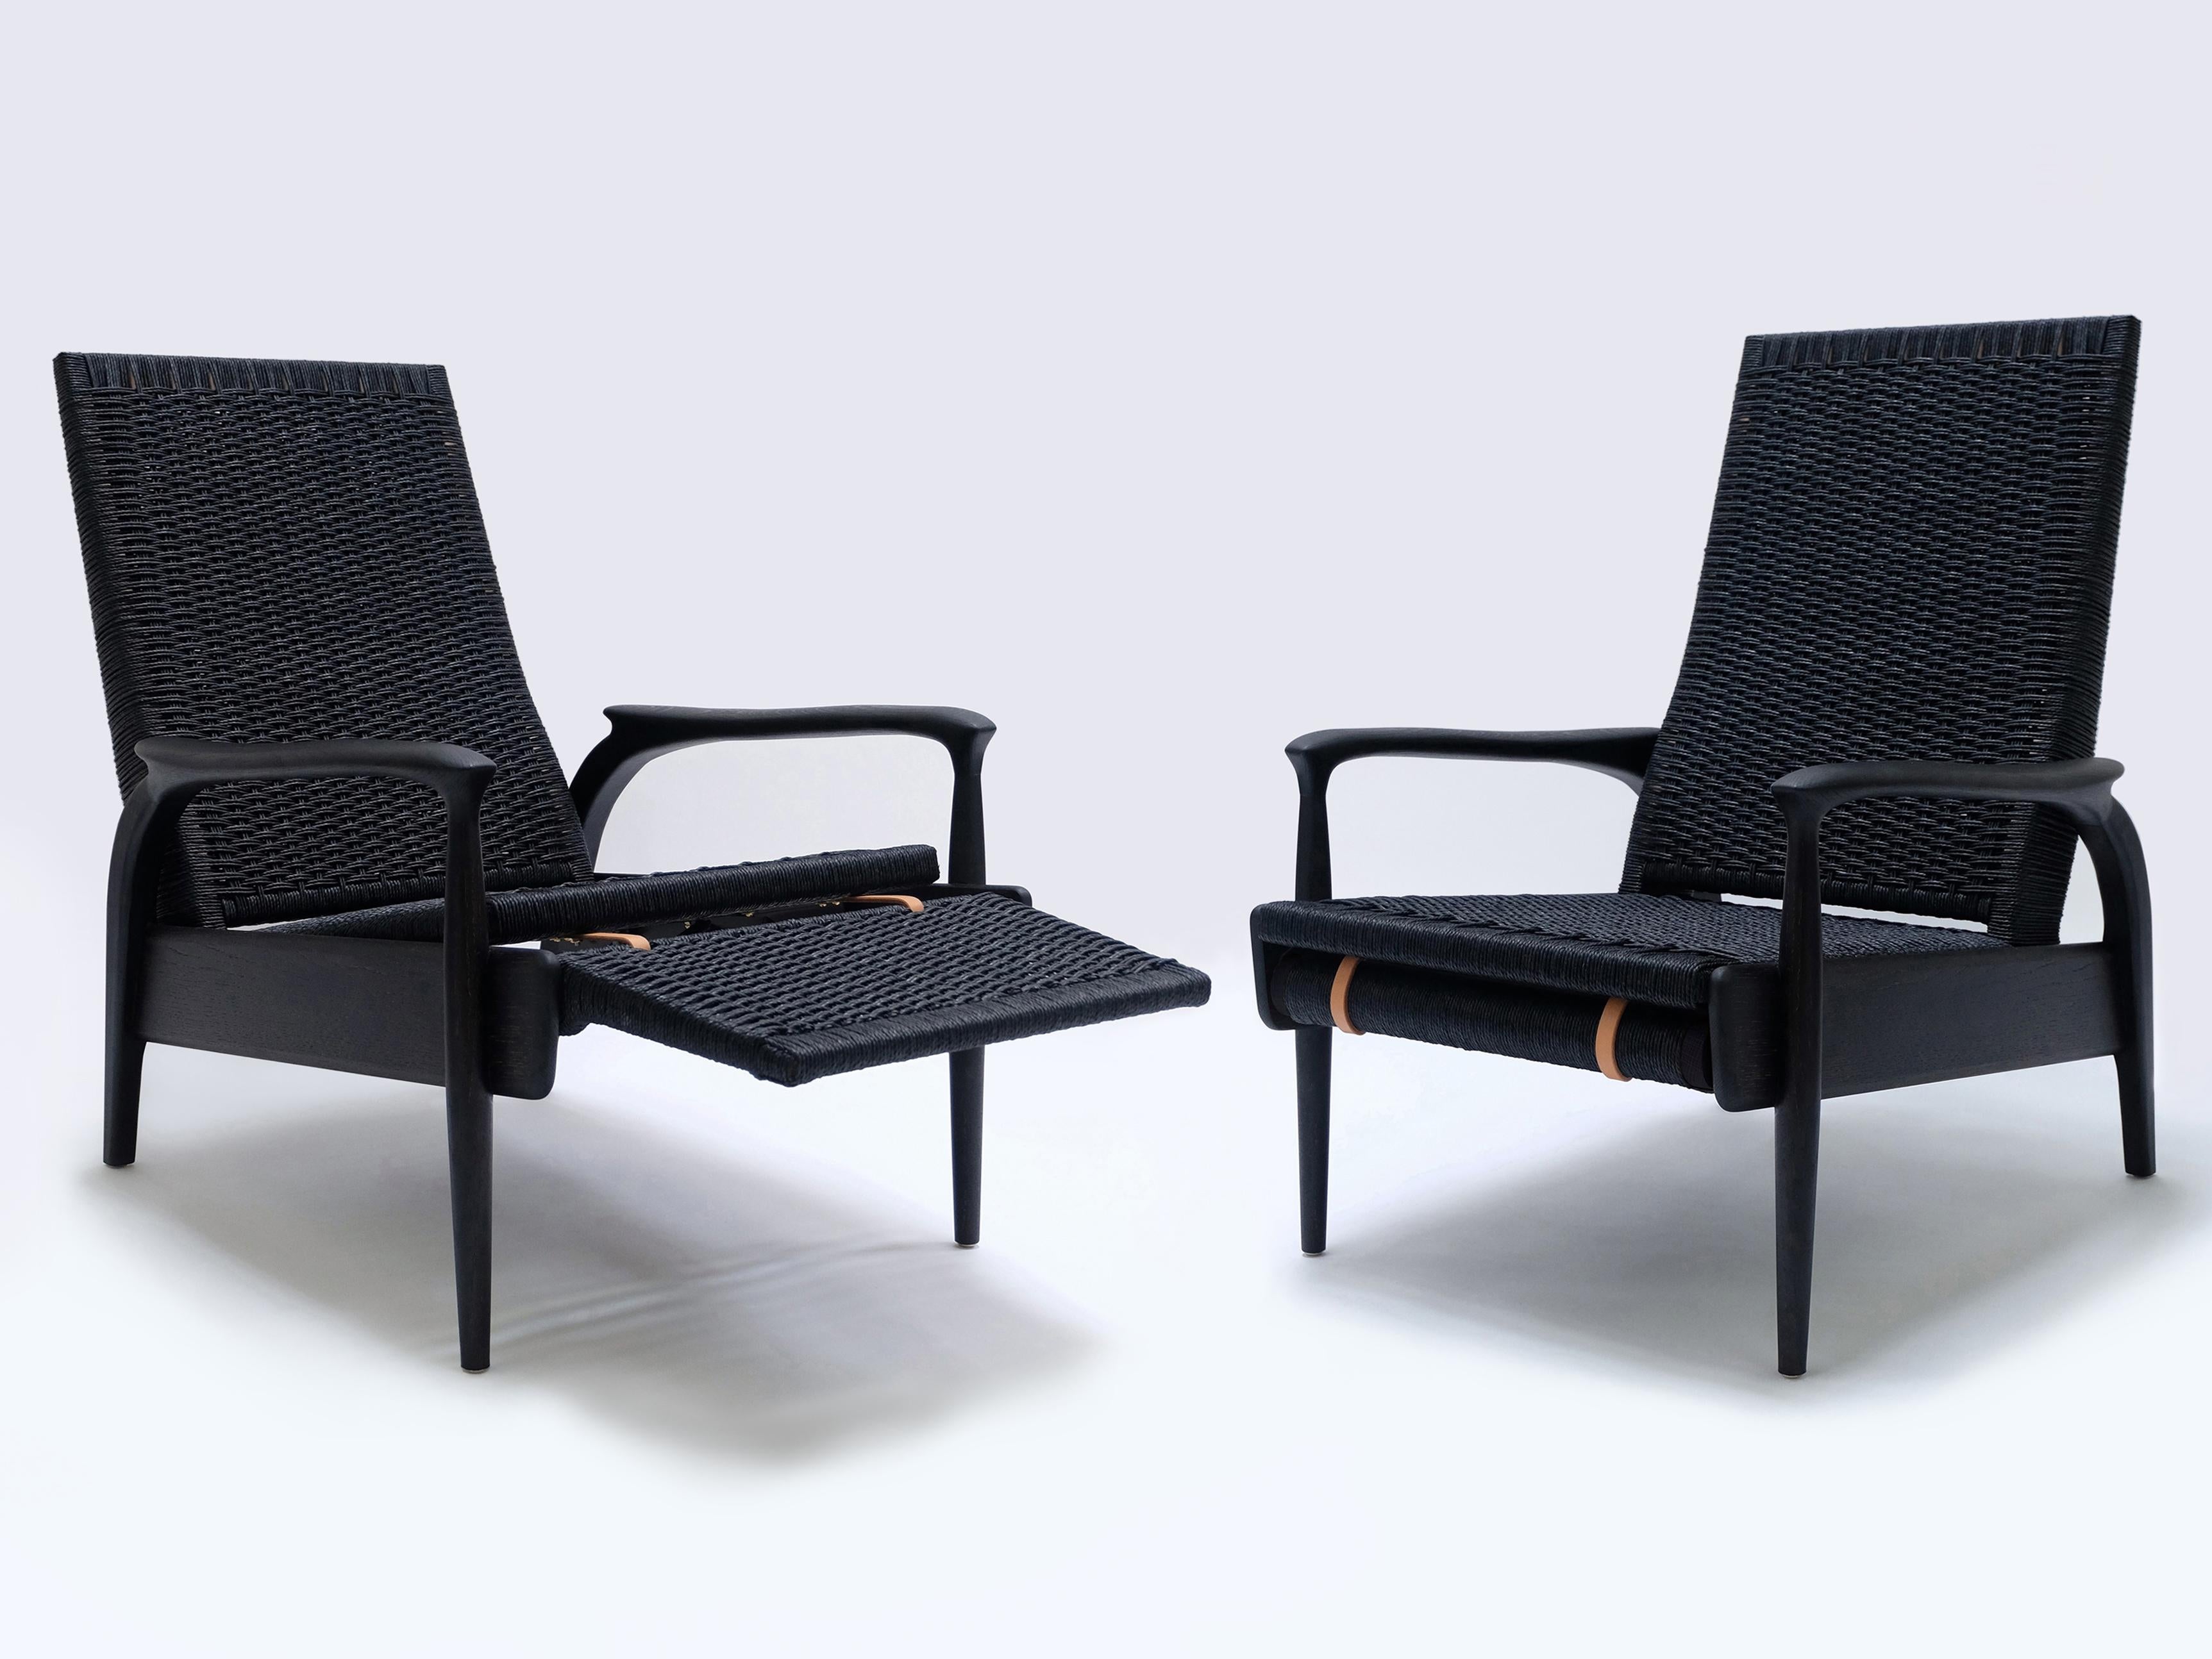 Paire de chaises longues écologiques inclinables FENDRIK fabriquées à la main et sur mesure par Studio180degree
Représenté en chêne noirci naturel massif durable et cordon danois noir d'origine

Noble - Tactile - Raffiné - Durable
Chaise longue